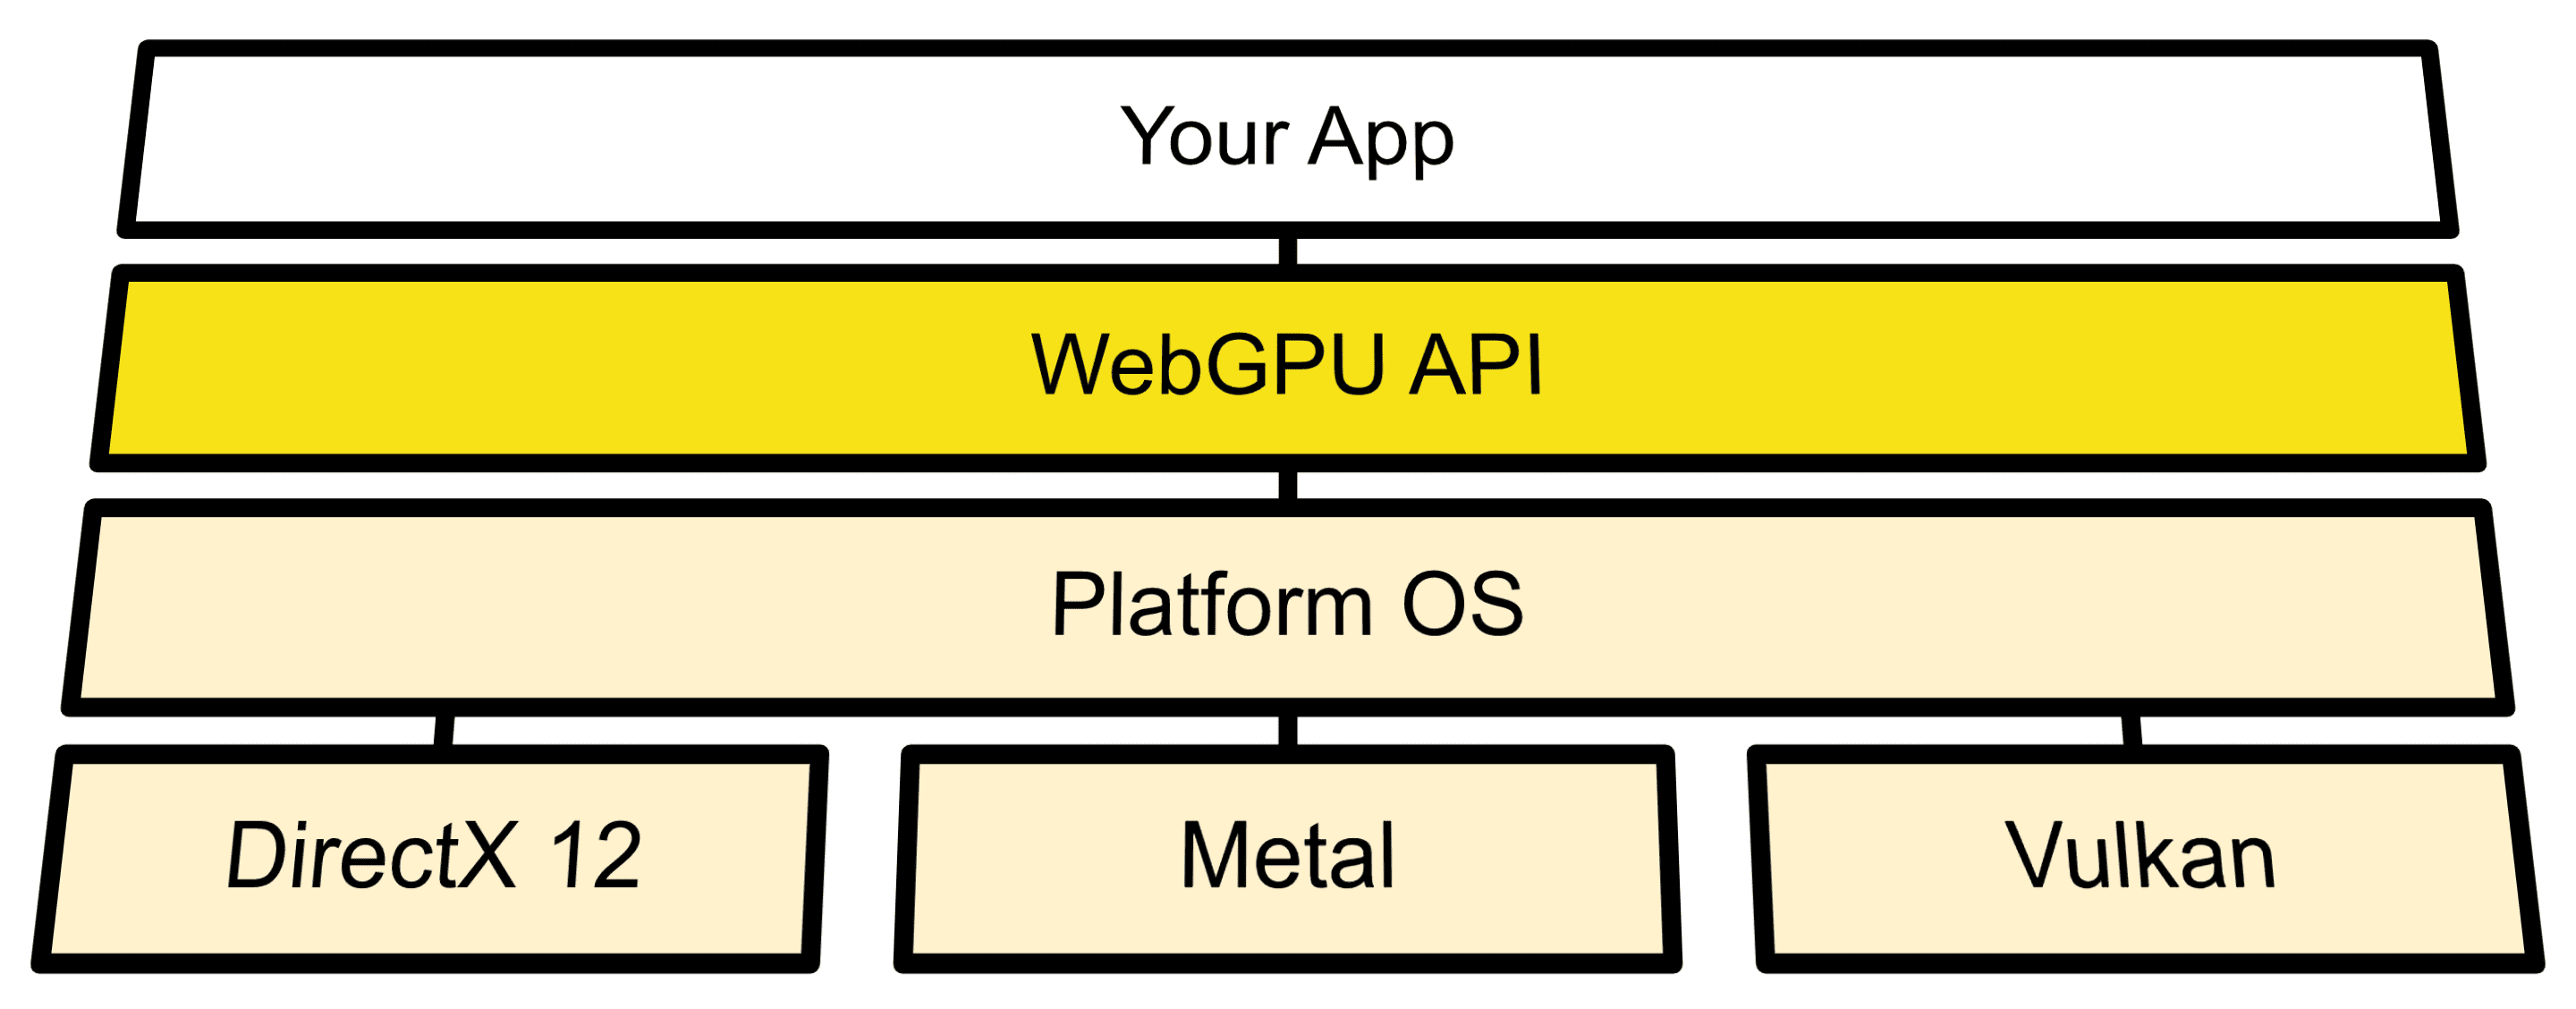 ओएस एपीआई और Direct3D 12, मेटल, और Vulkan के बीच WebGPUs का कनेक्शन दिखाने वाला आर्किटेक्चर डायग्राम.